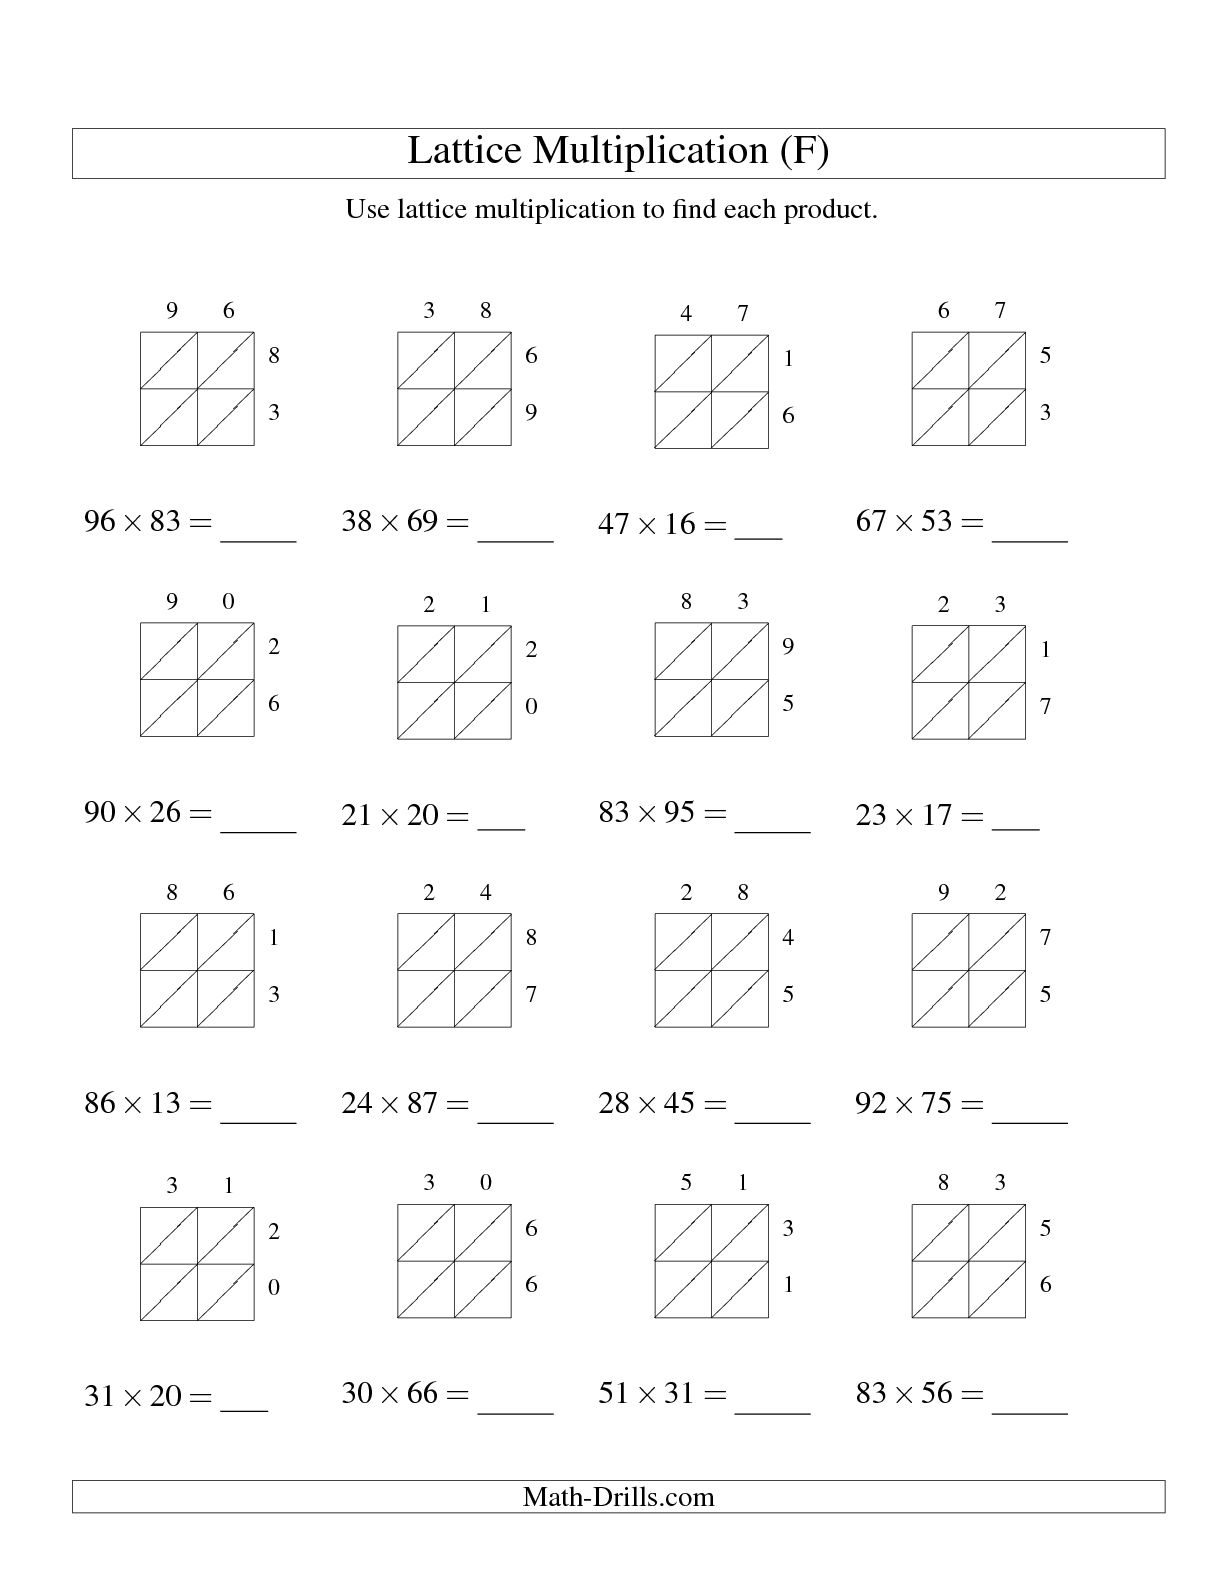 Lattice Multiplication Worksheets 5th Grade